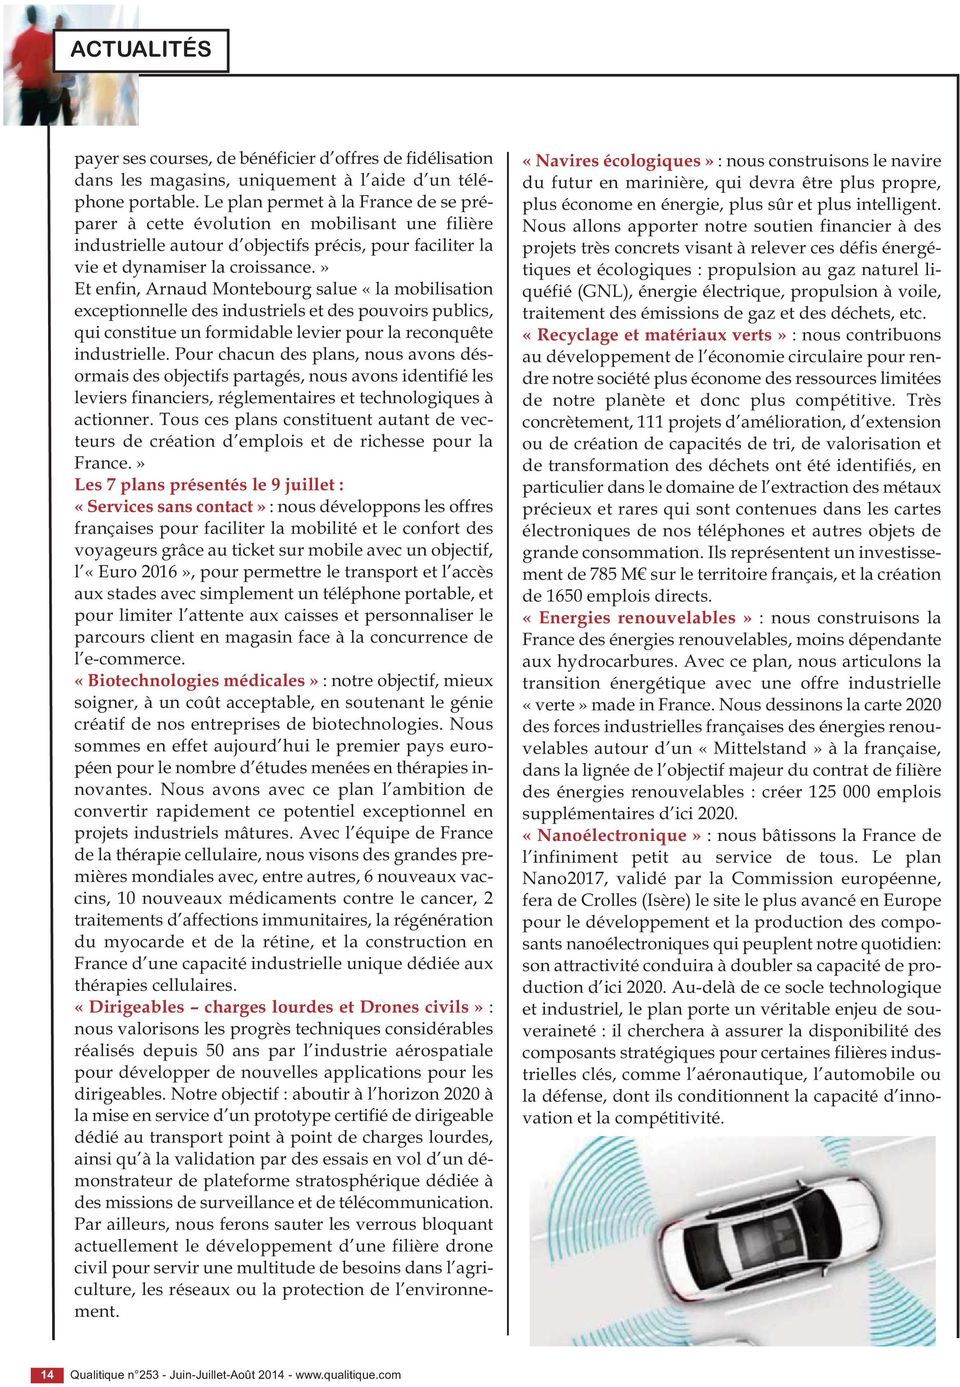 » Et enfin, Arnaud Montebourg salue «la mobilisation exceptionnelle des industriels et des pouvoirs publics, qui constitue un formidable levier pour la reconquête industrielle.